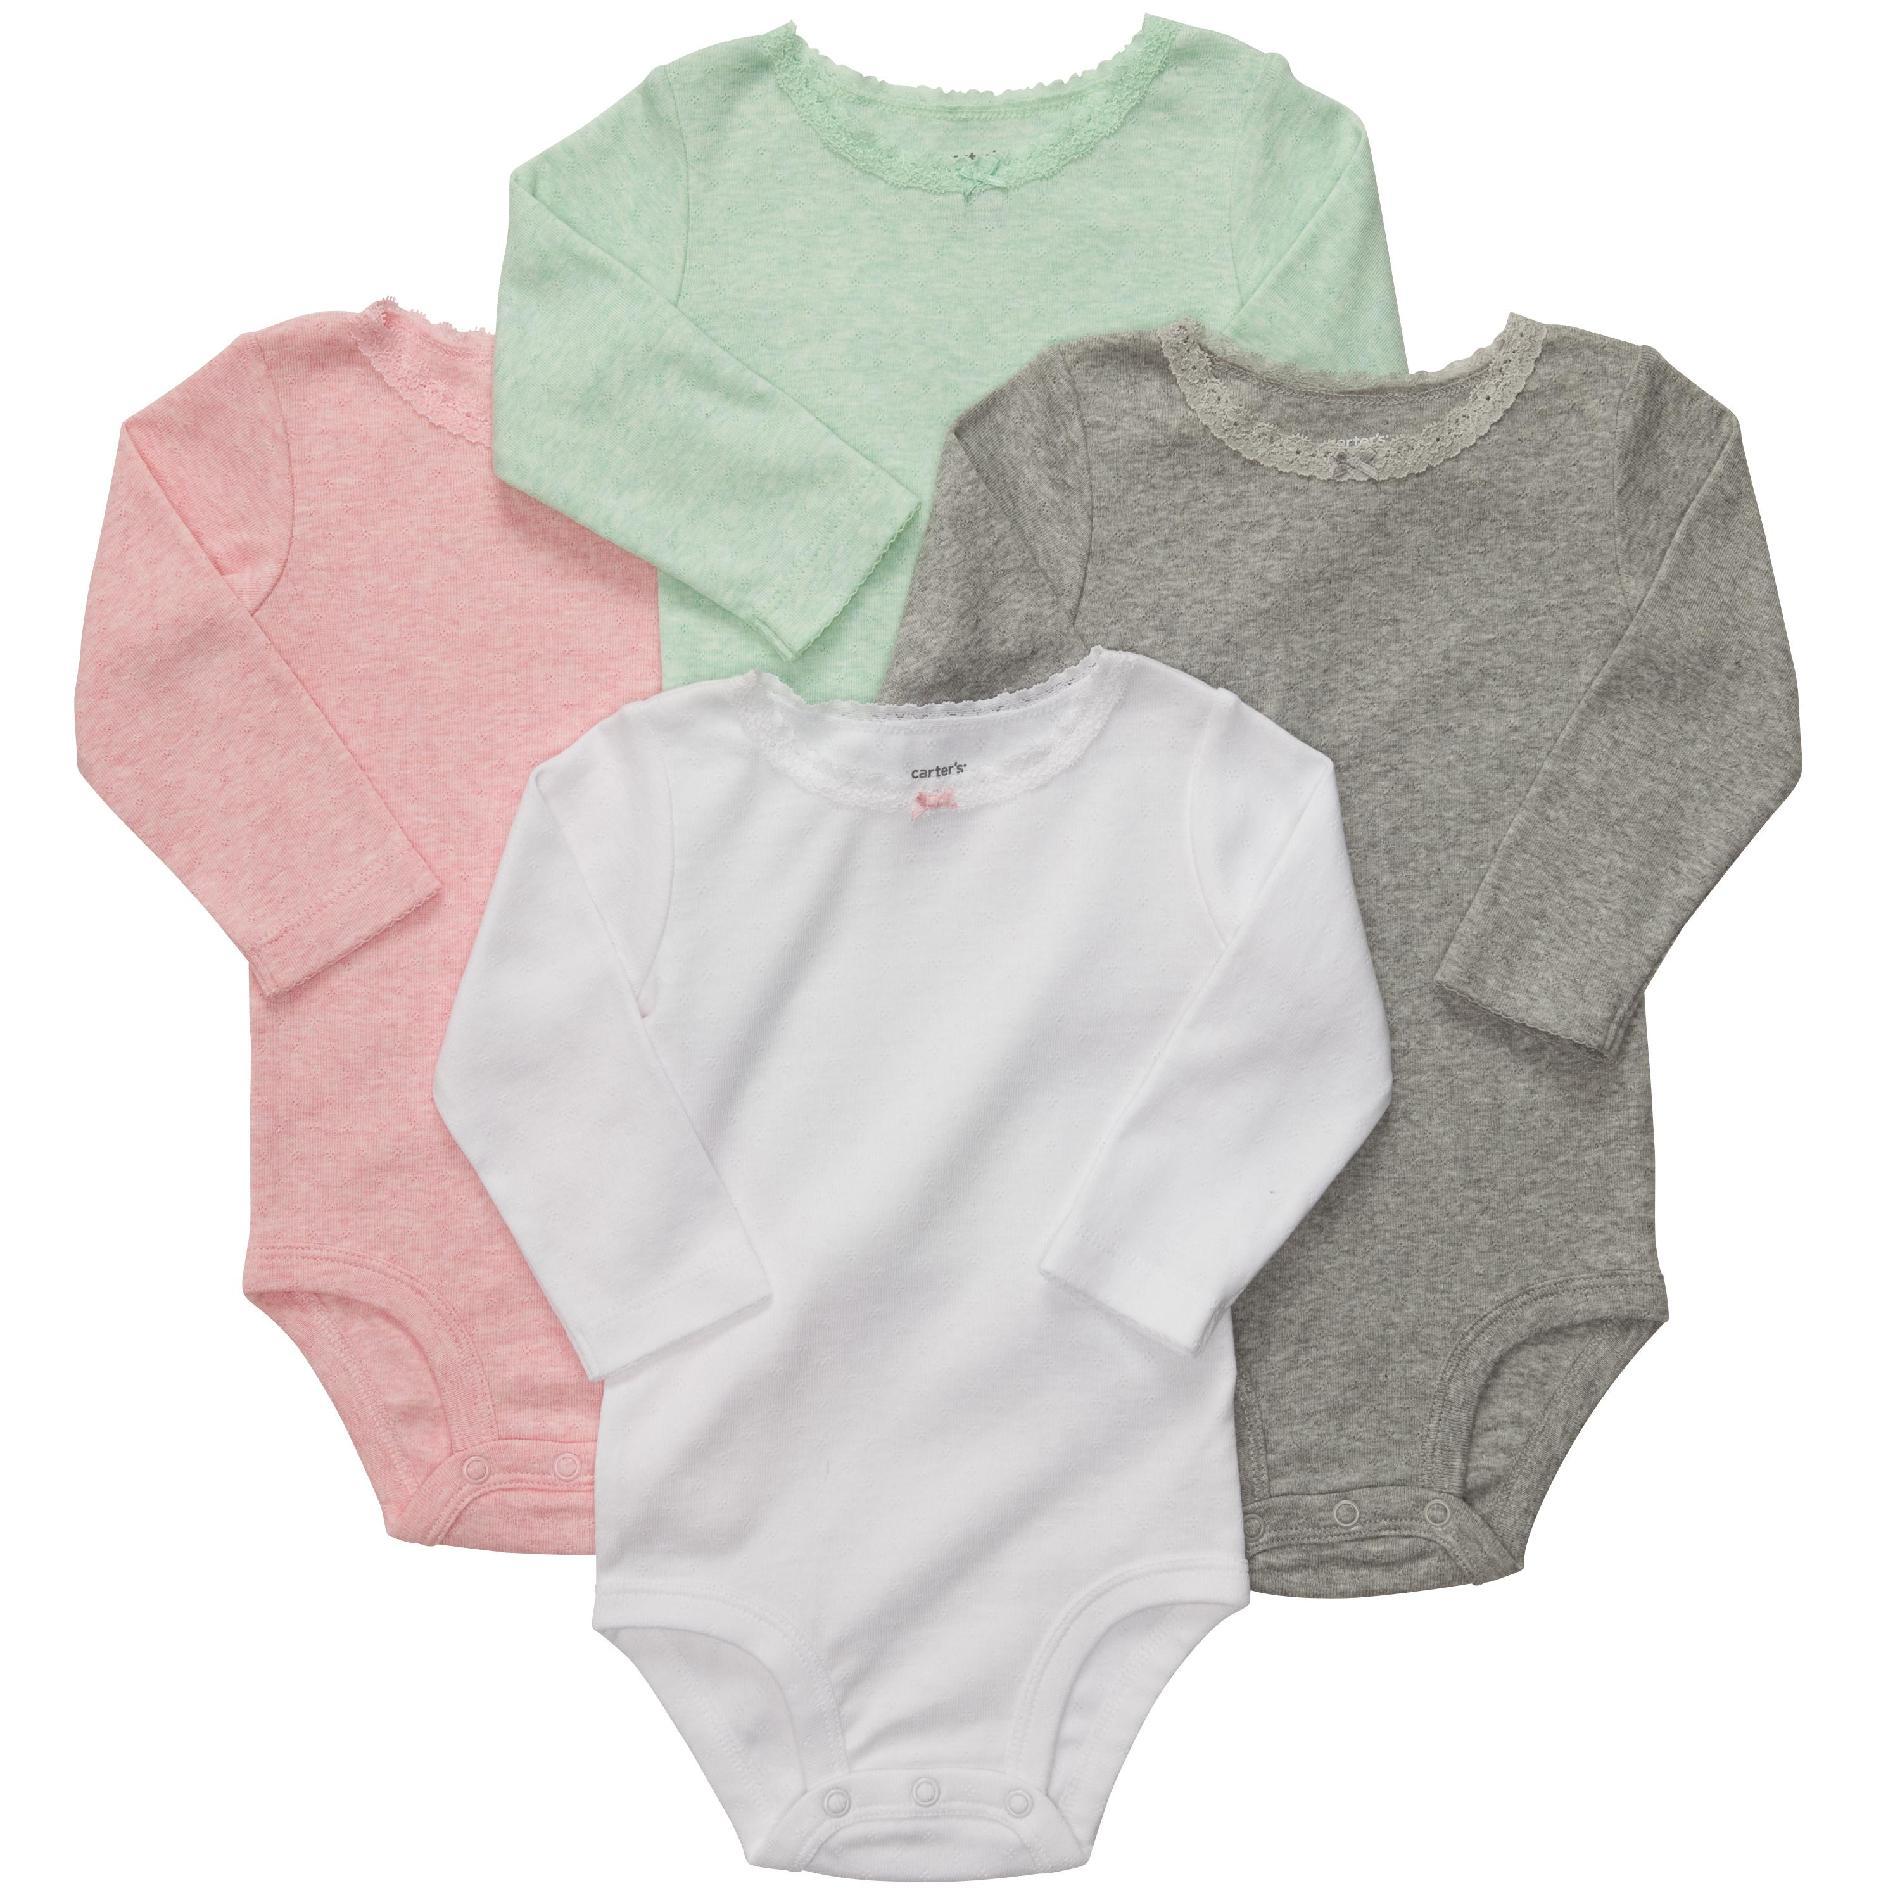 Carter's Newborn & Infant Girl's Long-Sleeve Bodysuits - 4 Pack